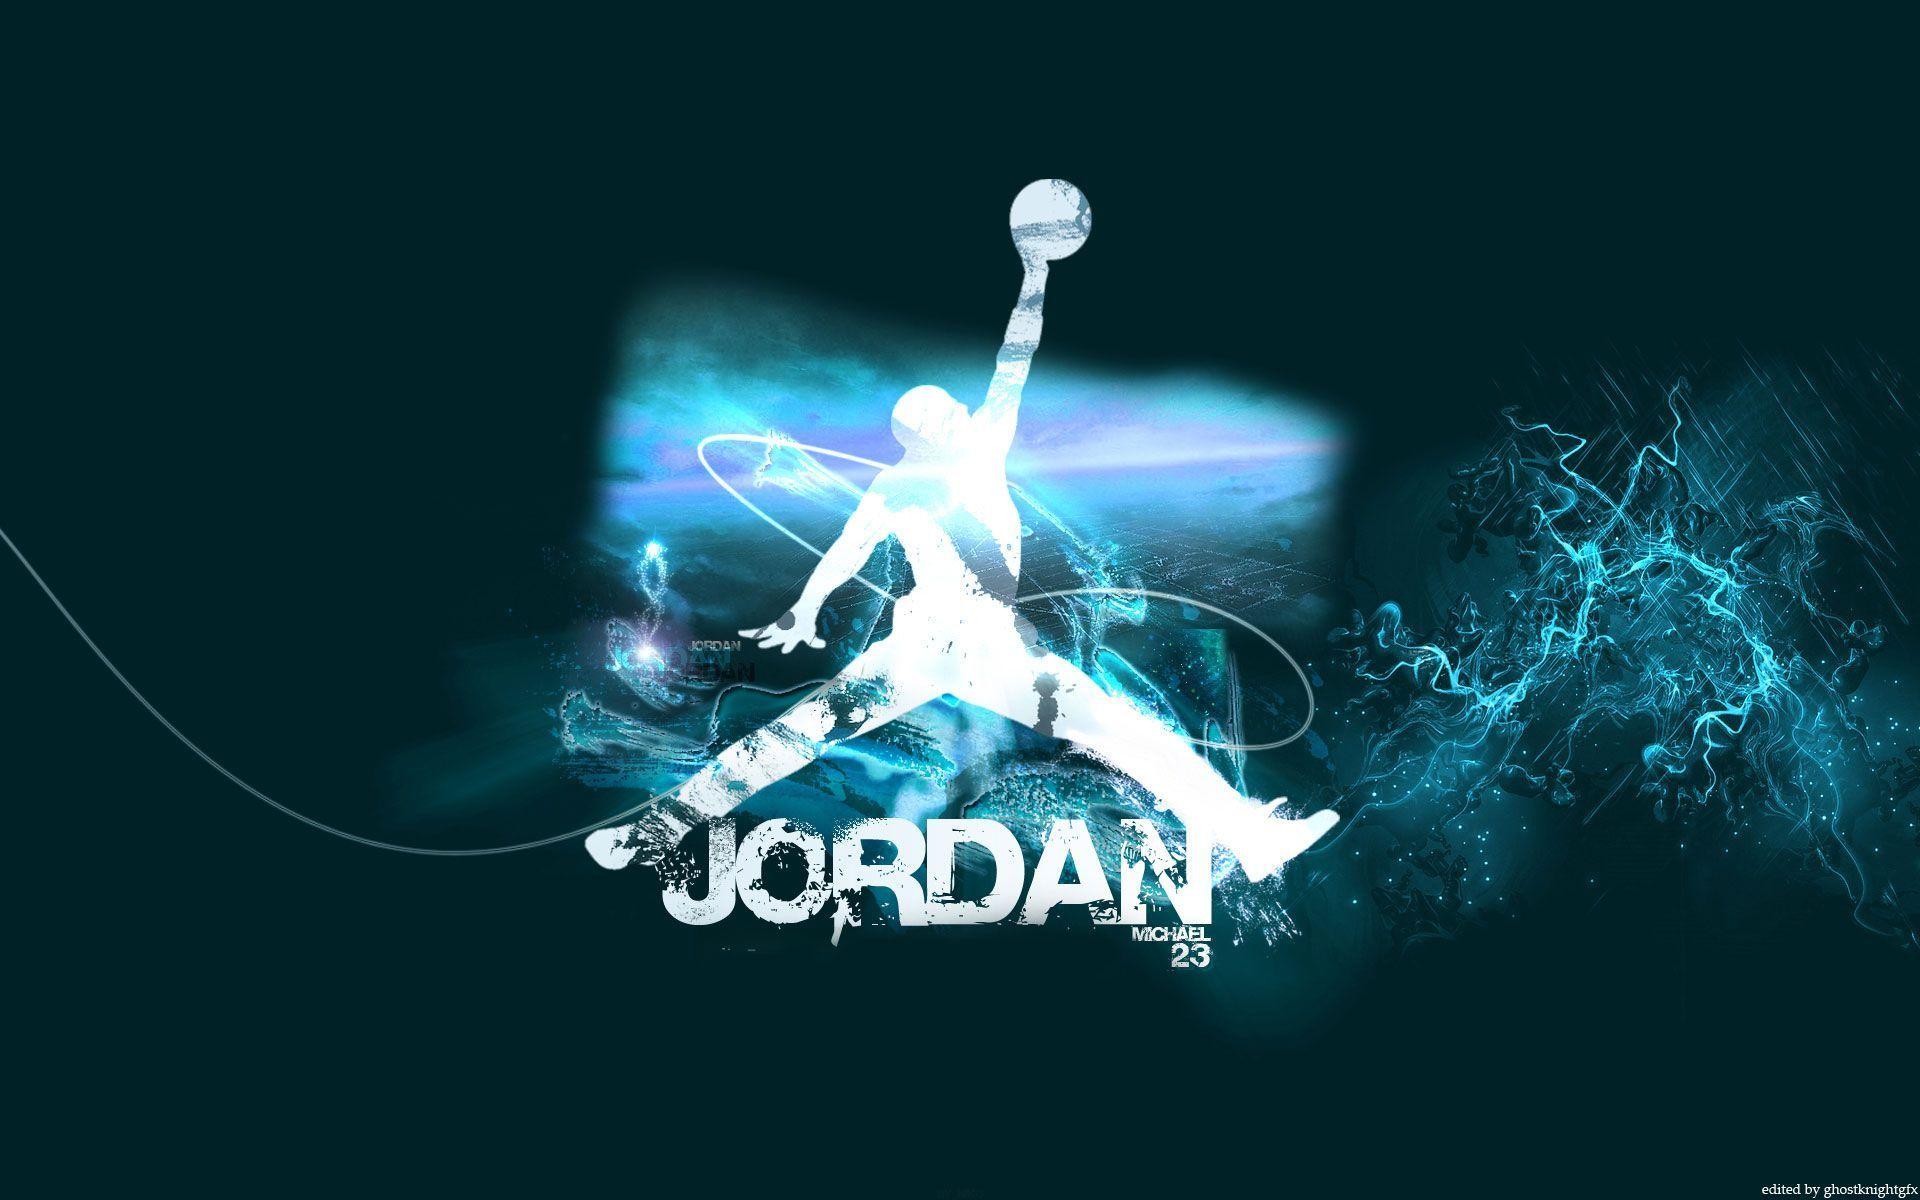 Michael Jordan Logo Wallpaper. Image